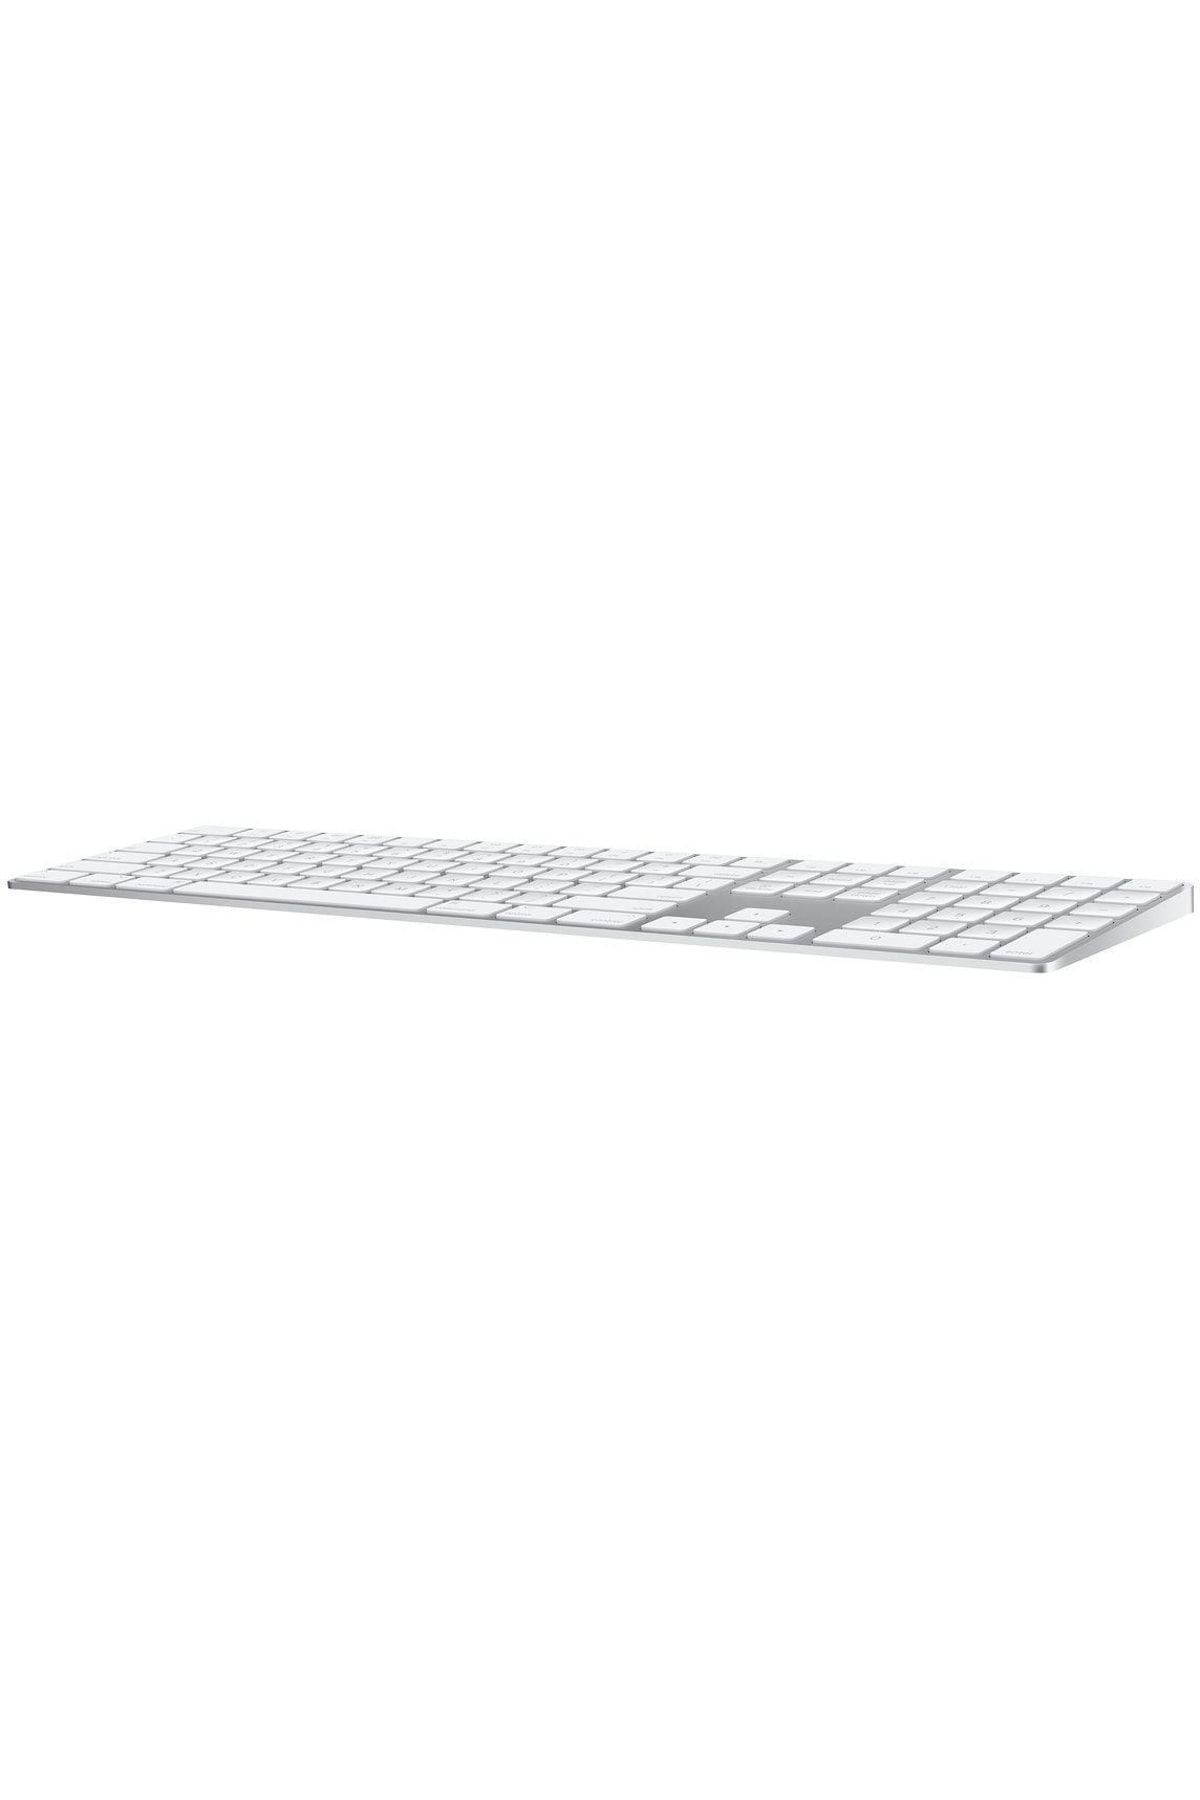 Apple Magic Keyboard Sayısal Tuş Takımlı Mq052tq/a Klavye Magic Keyboard Sayısal Tuş Takımlı Mq